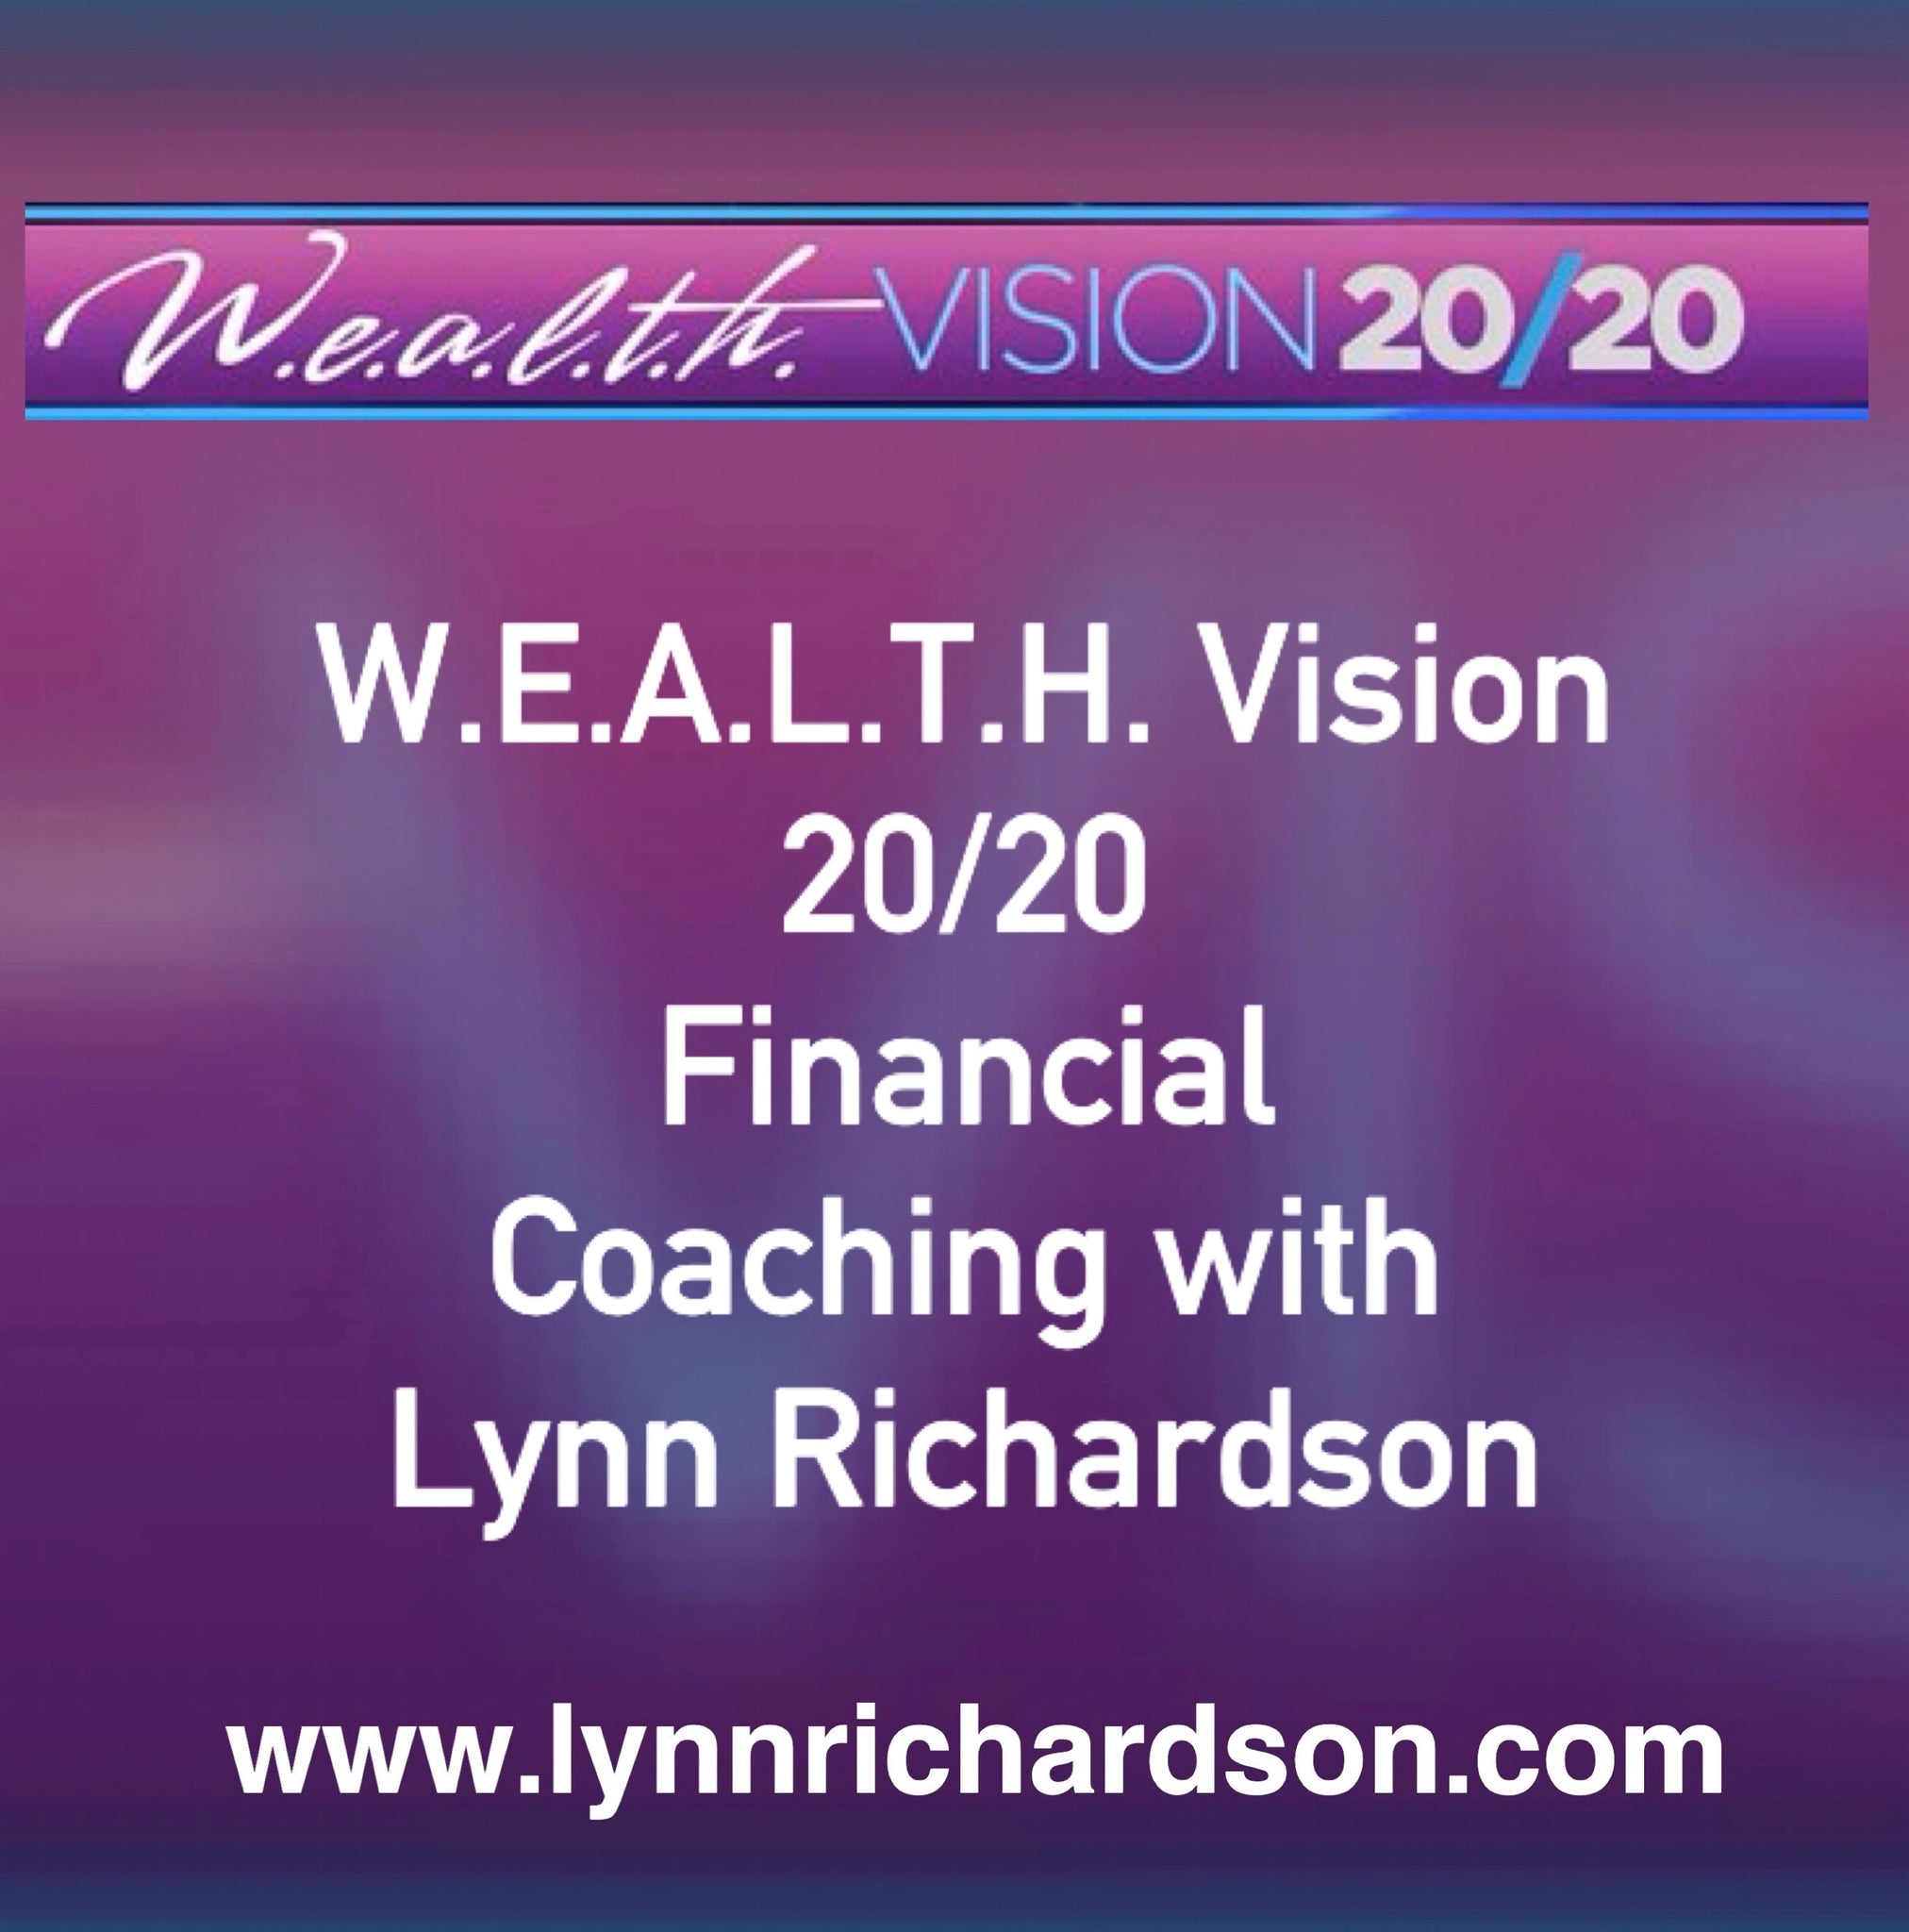 W.E.A.L.T.H. Vision 20/20 Financial Coaching